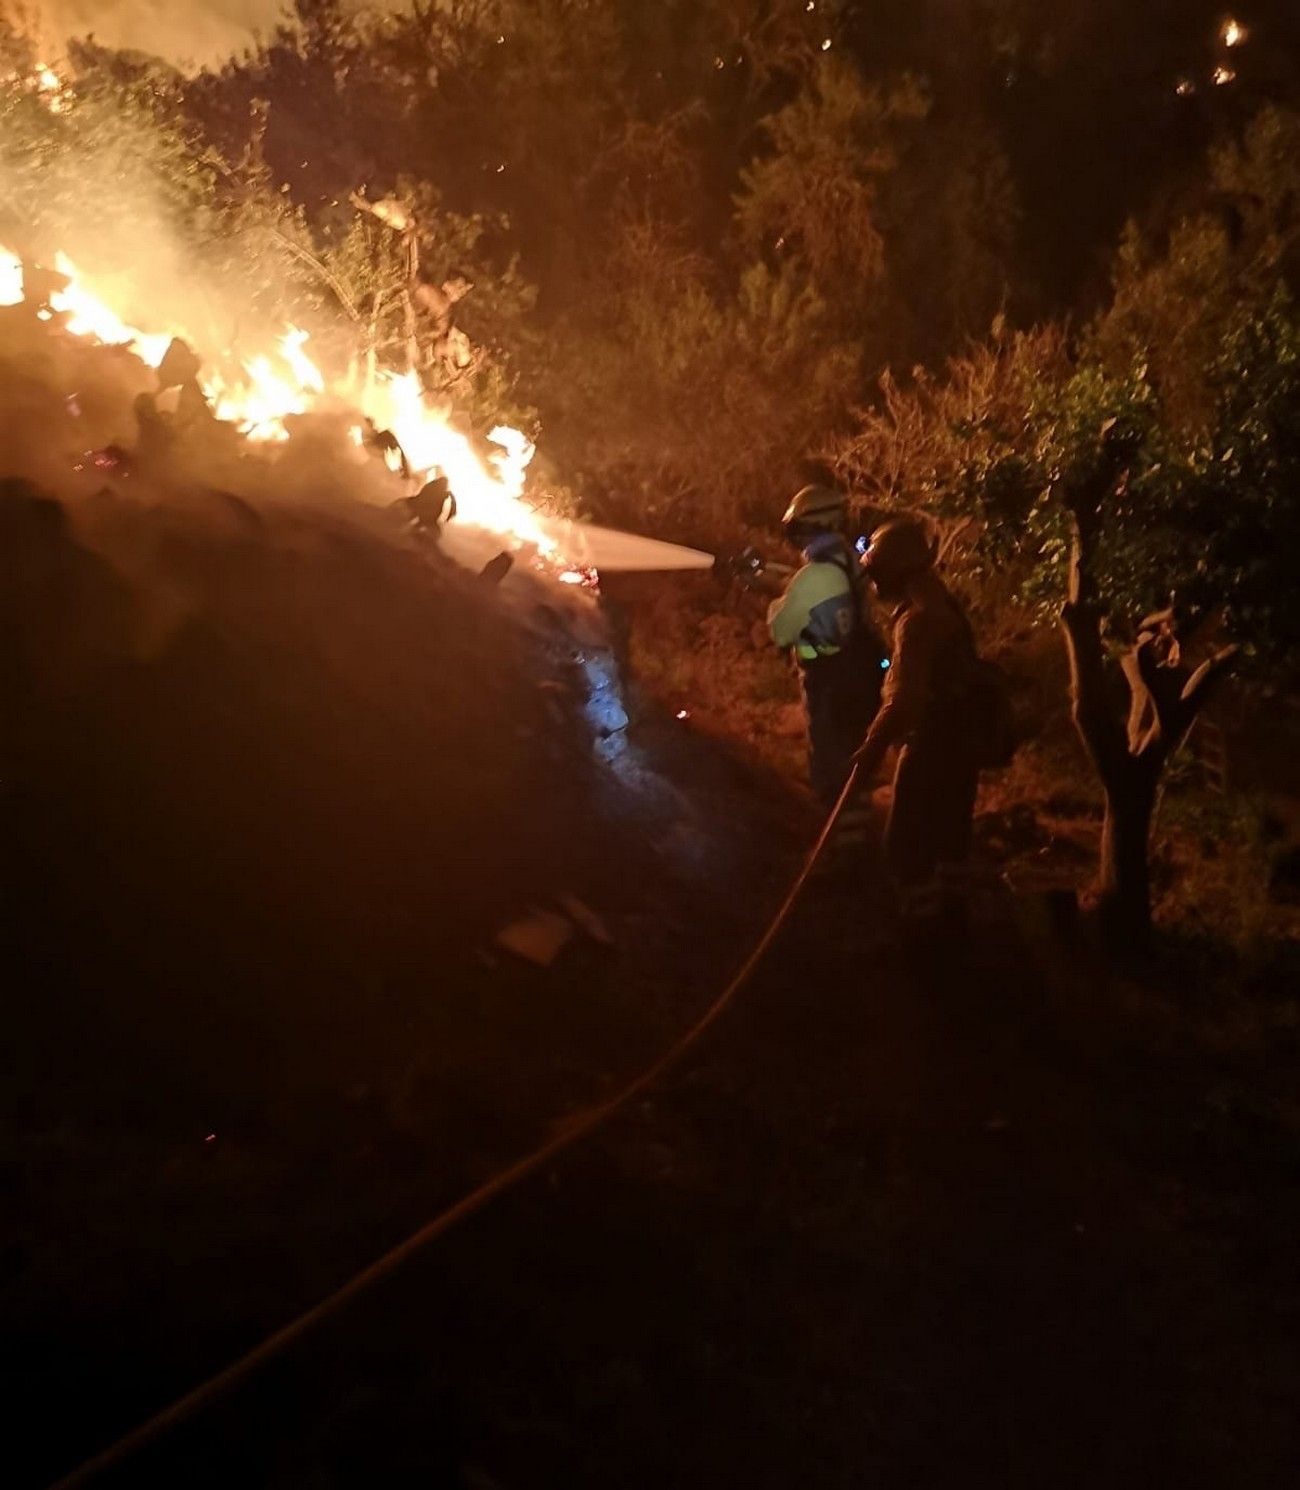 El incendio de La Palma pasa a nivel 2 y se desaloja por precaución a decenas de vecinos